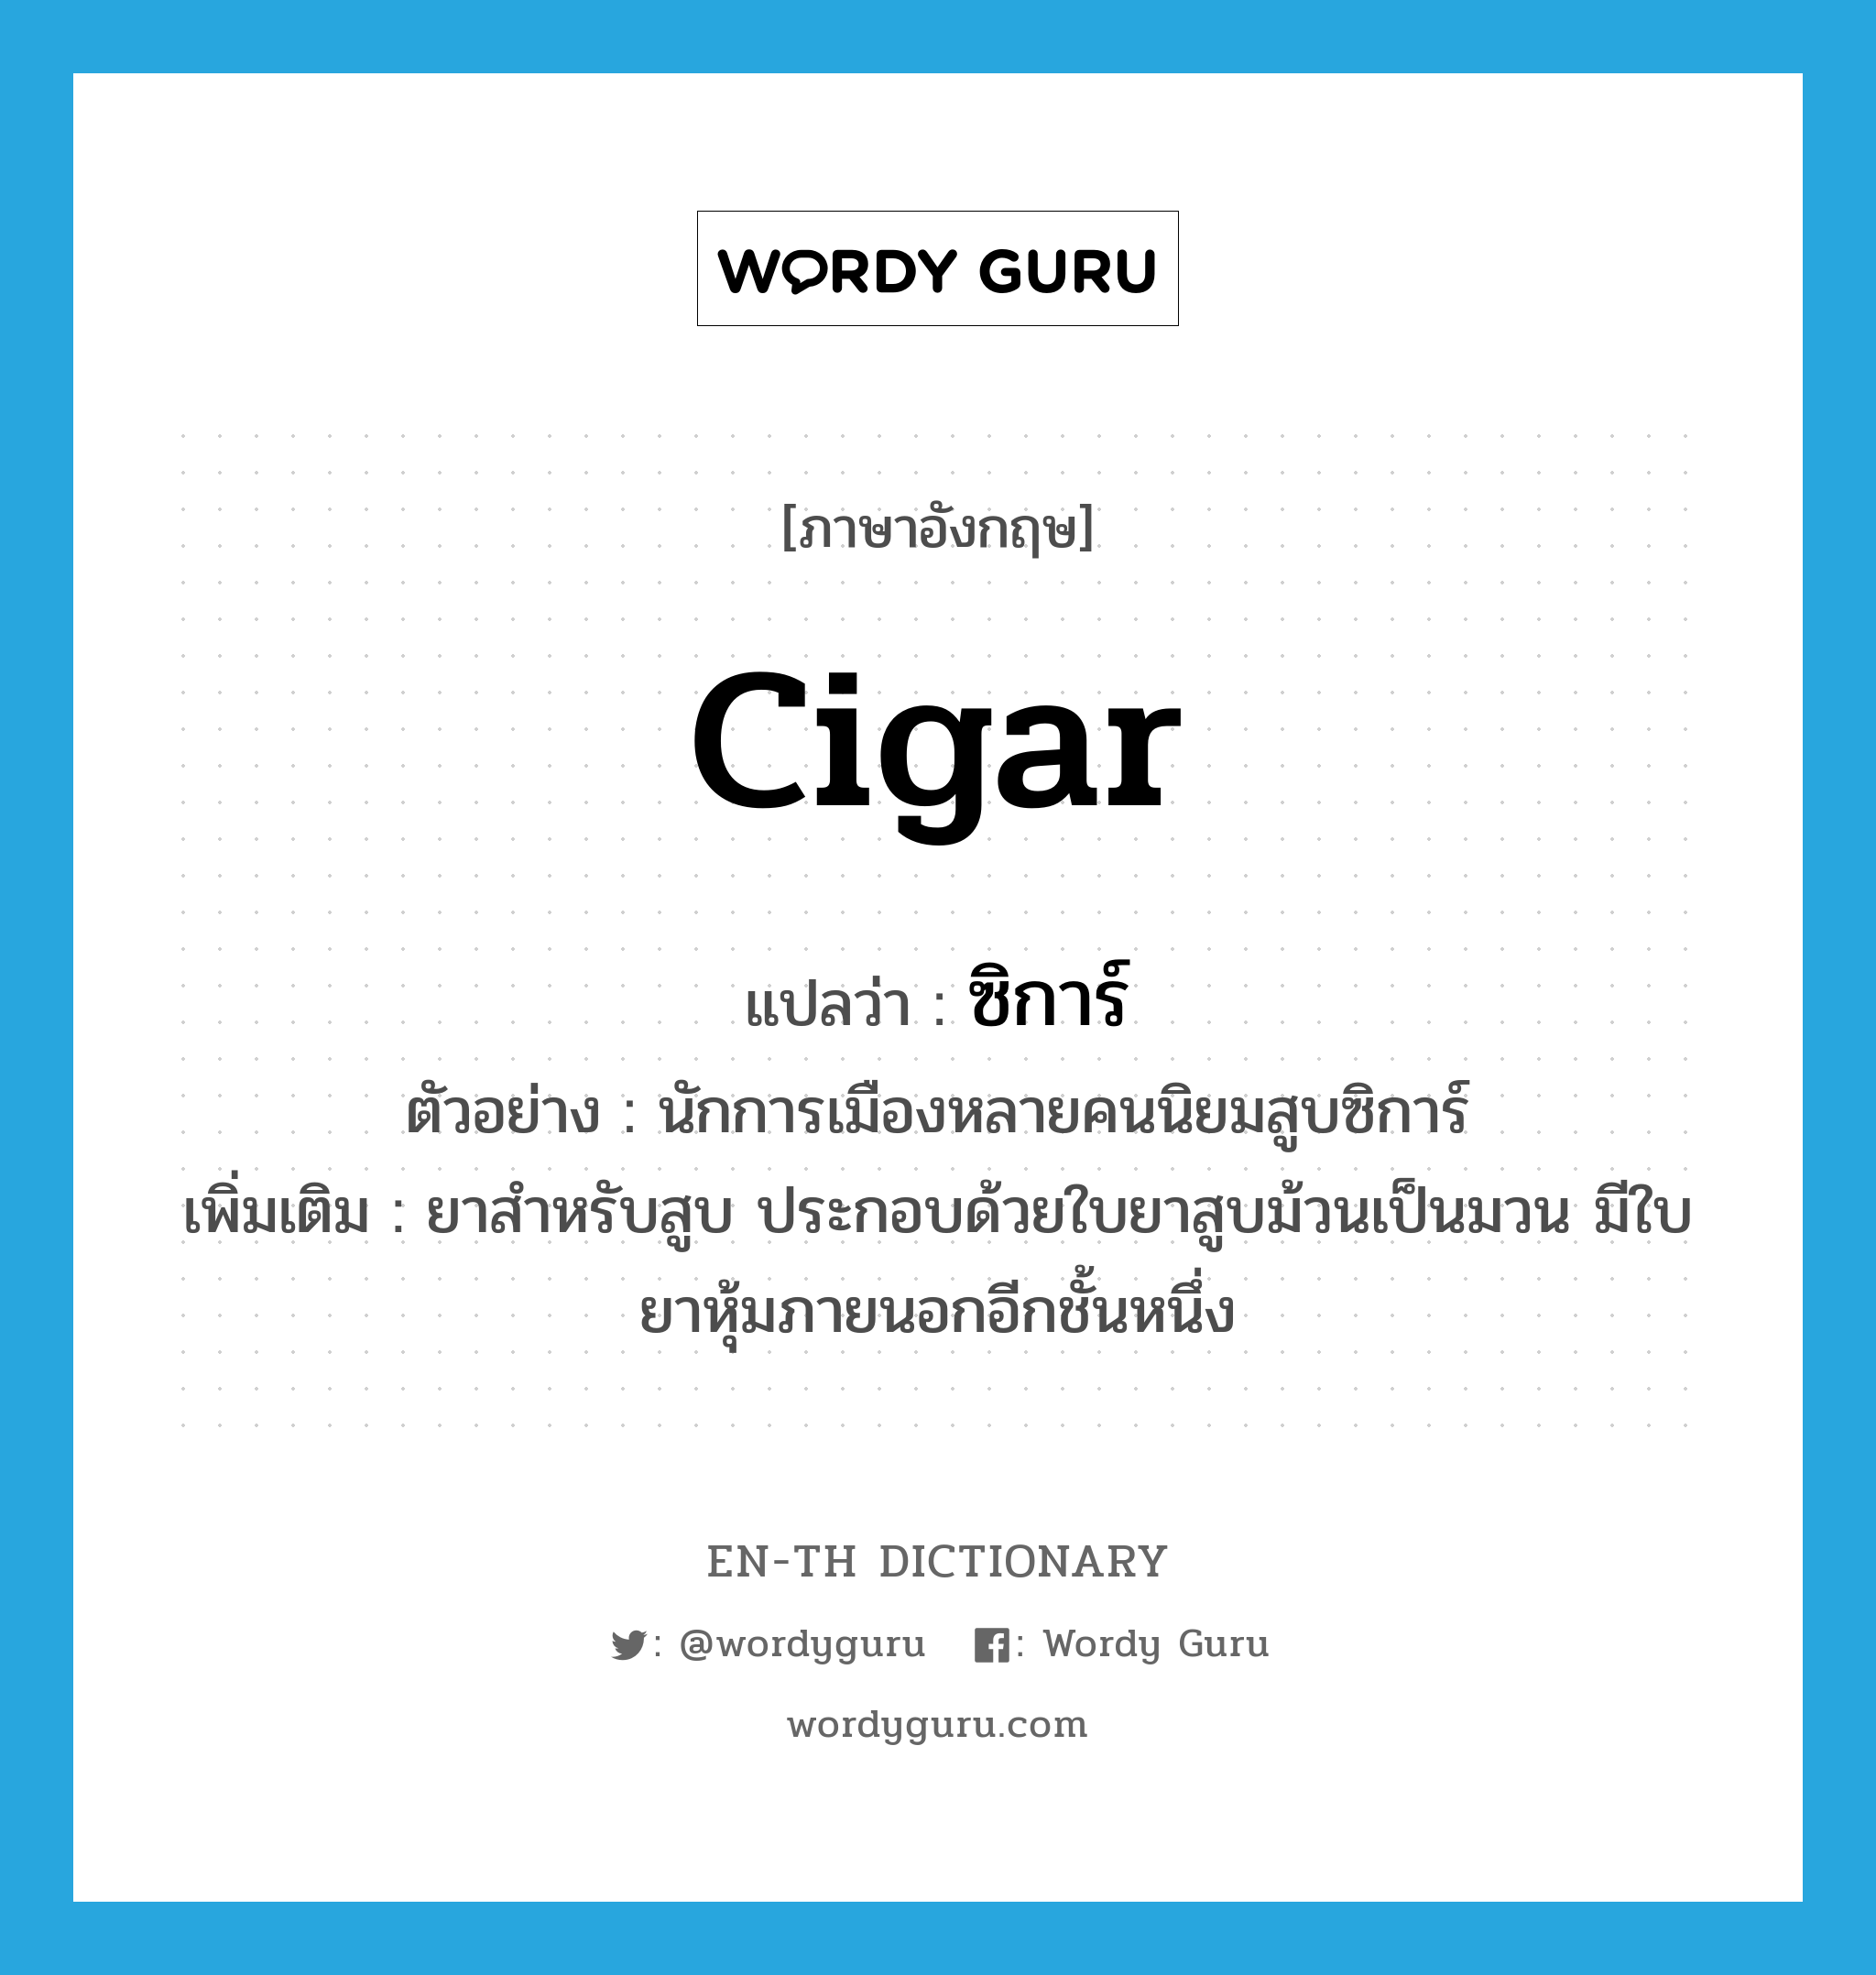 ซิการ์ ภาษาอังกฤษ?, คำศัพท์ภาษาอังกฤษ ซิการ์ แปลว่า cigar ประเภท N ตัวอย่าง นักการเมืองหลายคนนิยมสูบซิการ์ เพิ่มเติม ยาสำหรับสูบ ประกอบด้วยใบยาสูบม้วนเป็นมวน มีใบยาหุ้มภายนอกอีกชั้นหนึ่ง หมวด N